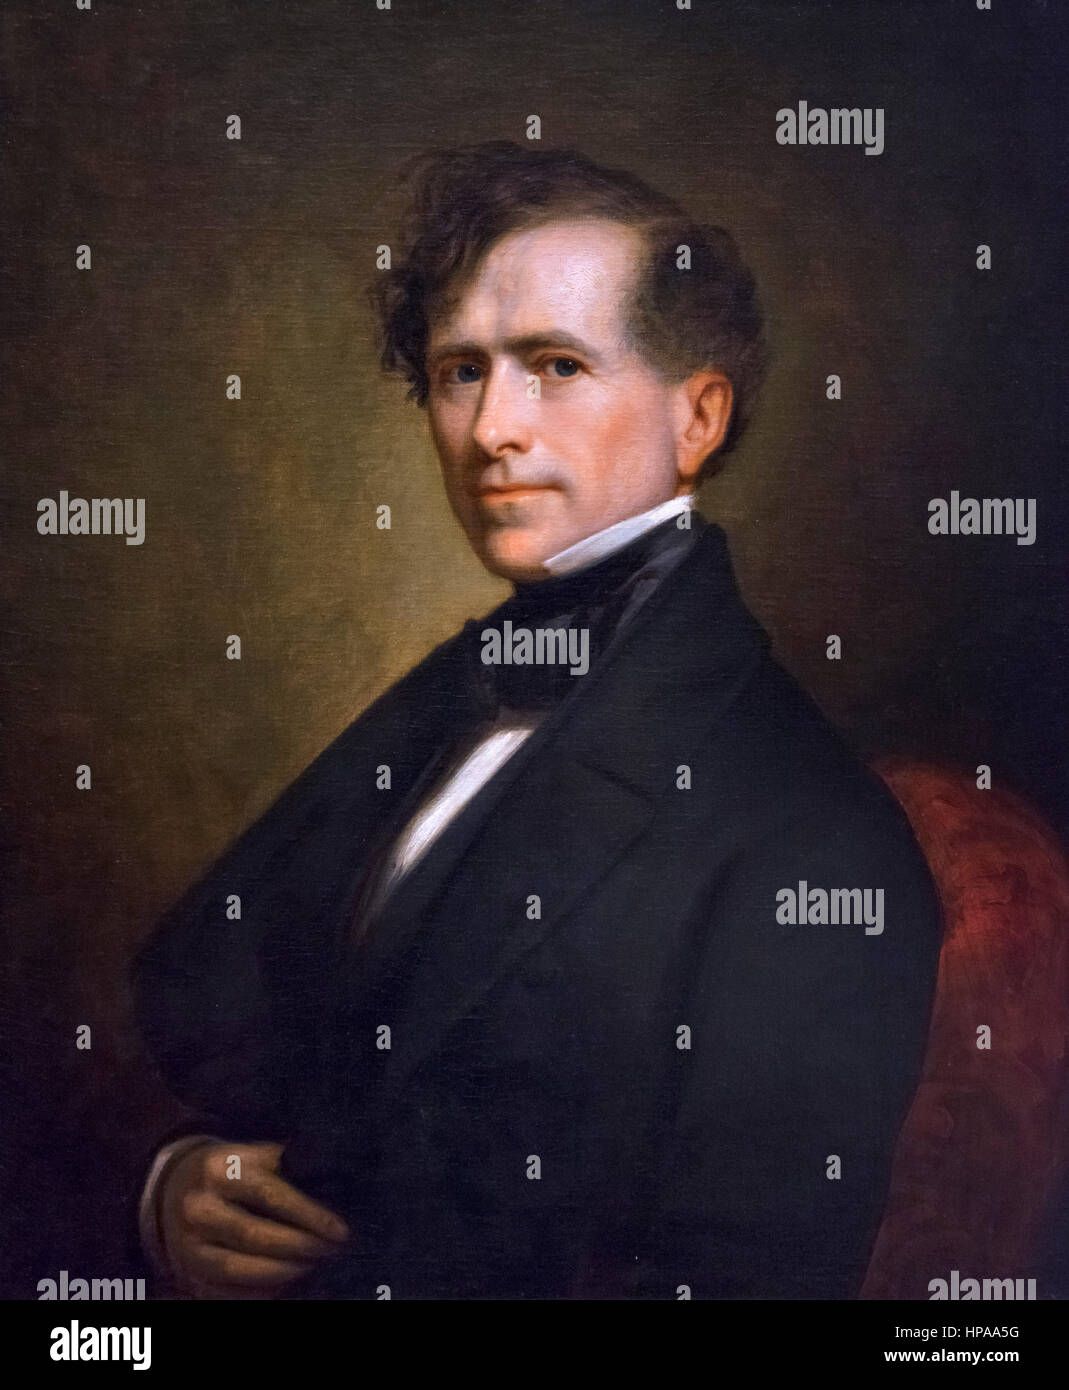 Franklin Pierce. Porträt des 14. US-Präsidenten Franklin Pierce (1804-1869) von George Peter Alexander Healy, Öl auf Leinwand, 1853 Stockfoto